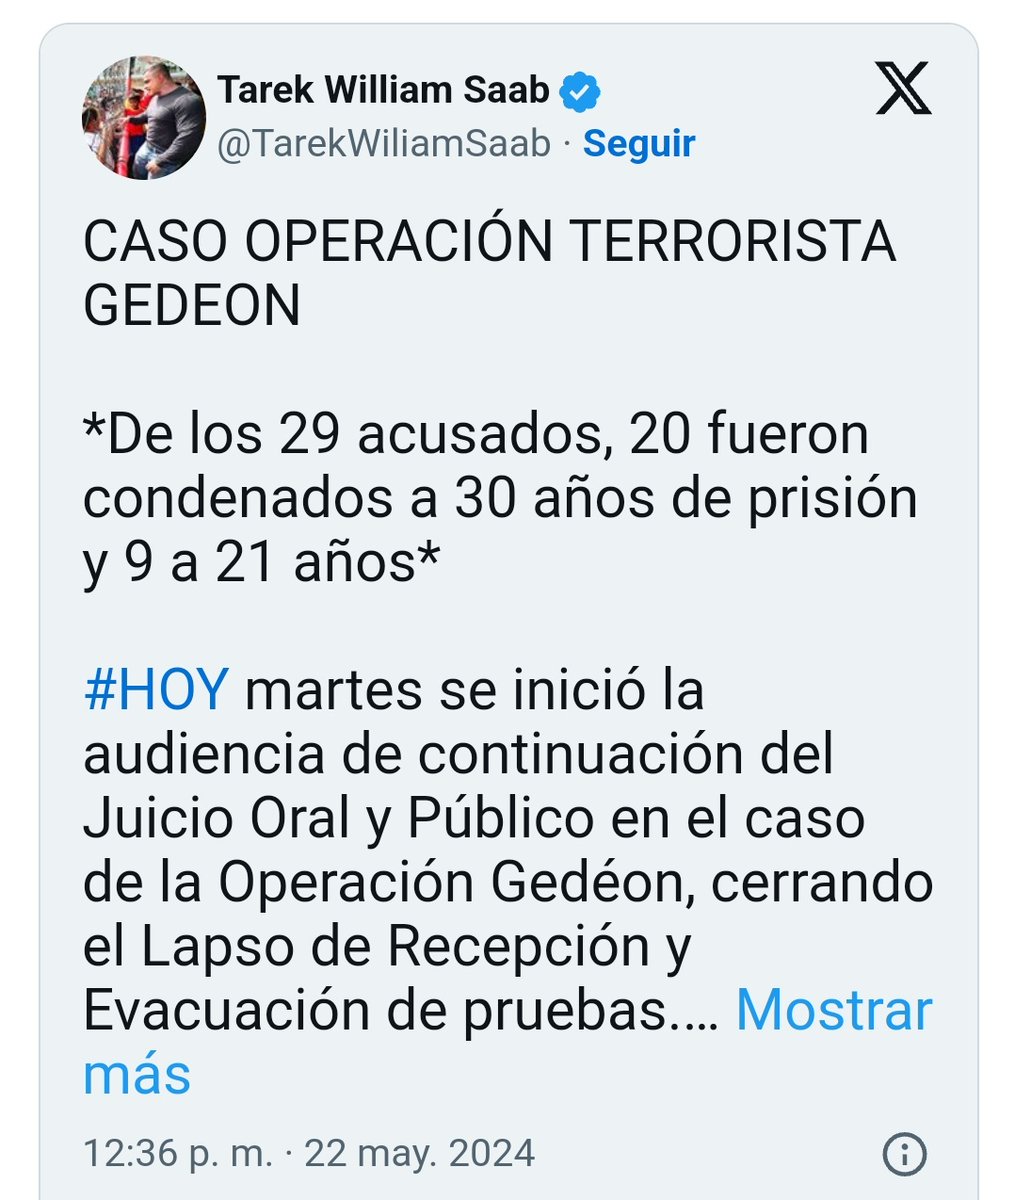 Veinte acusados en la Operación Gedeón (incursión armada con la intención de derrocar al pdte. Nicolás Maduro) han sido condenados a 30 años de prisión, mientras que otros 9 ciudadanos recibieron una sentencia de 21 años, informó el Fiscal Gral. 🇻🇪 Tarek William Saab. #Donnalisi